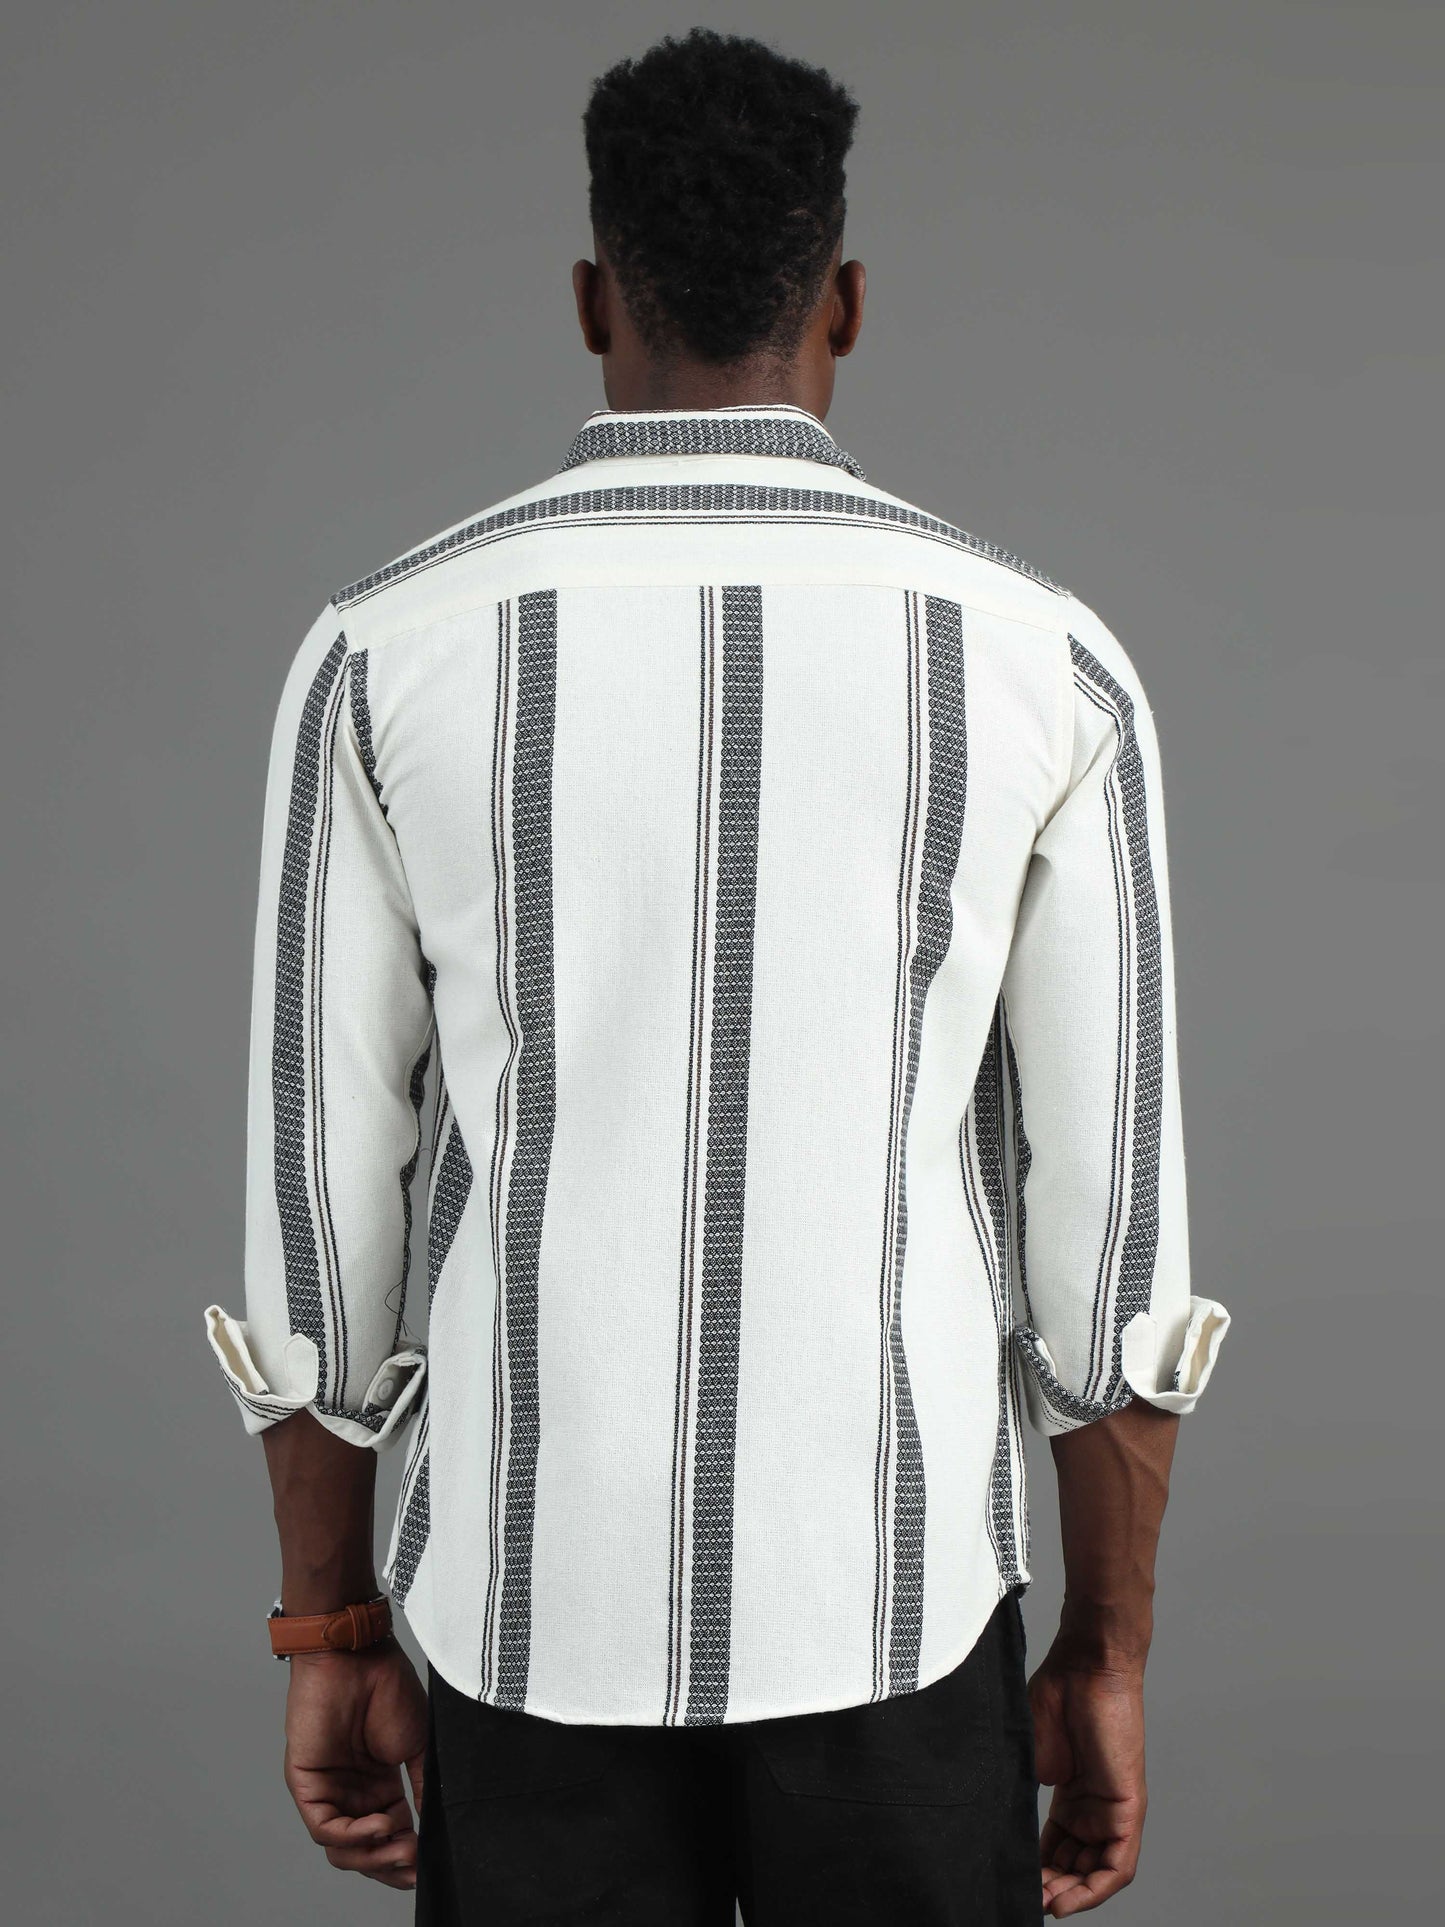 full sleeve black and white striped shirt for men